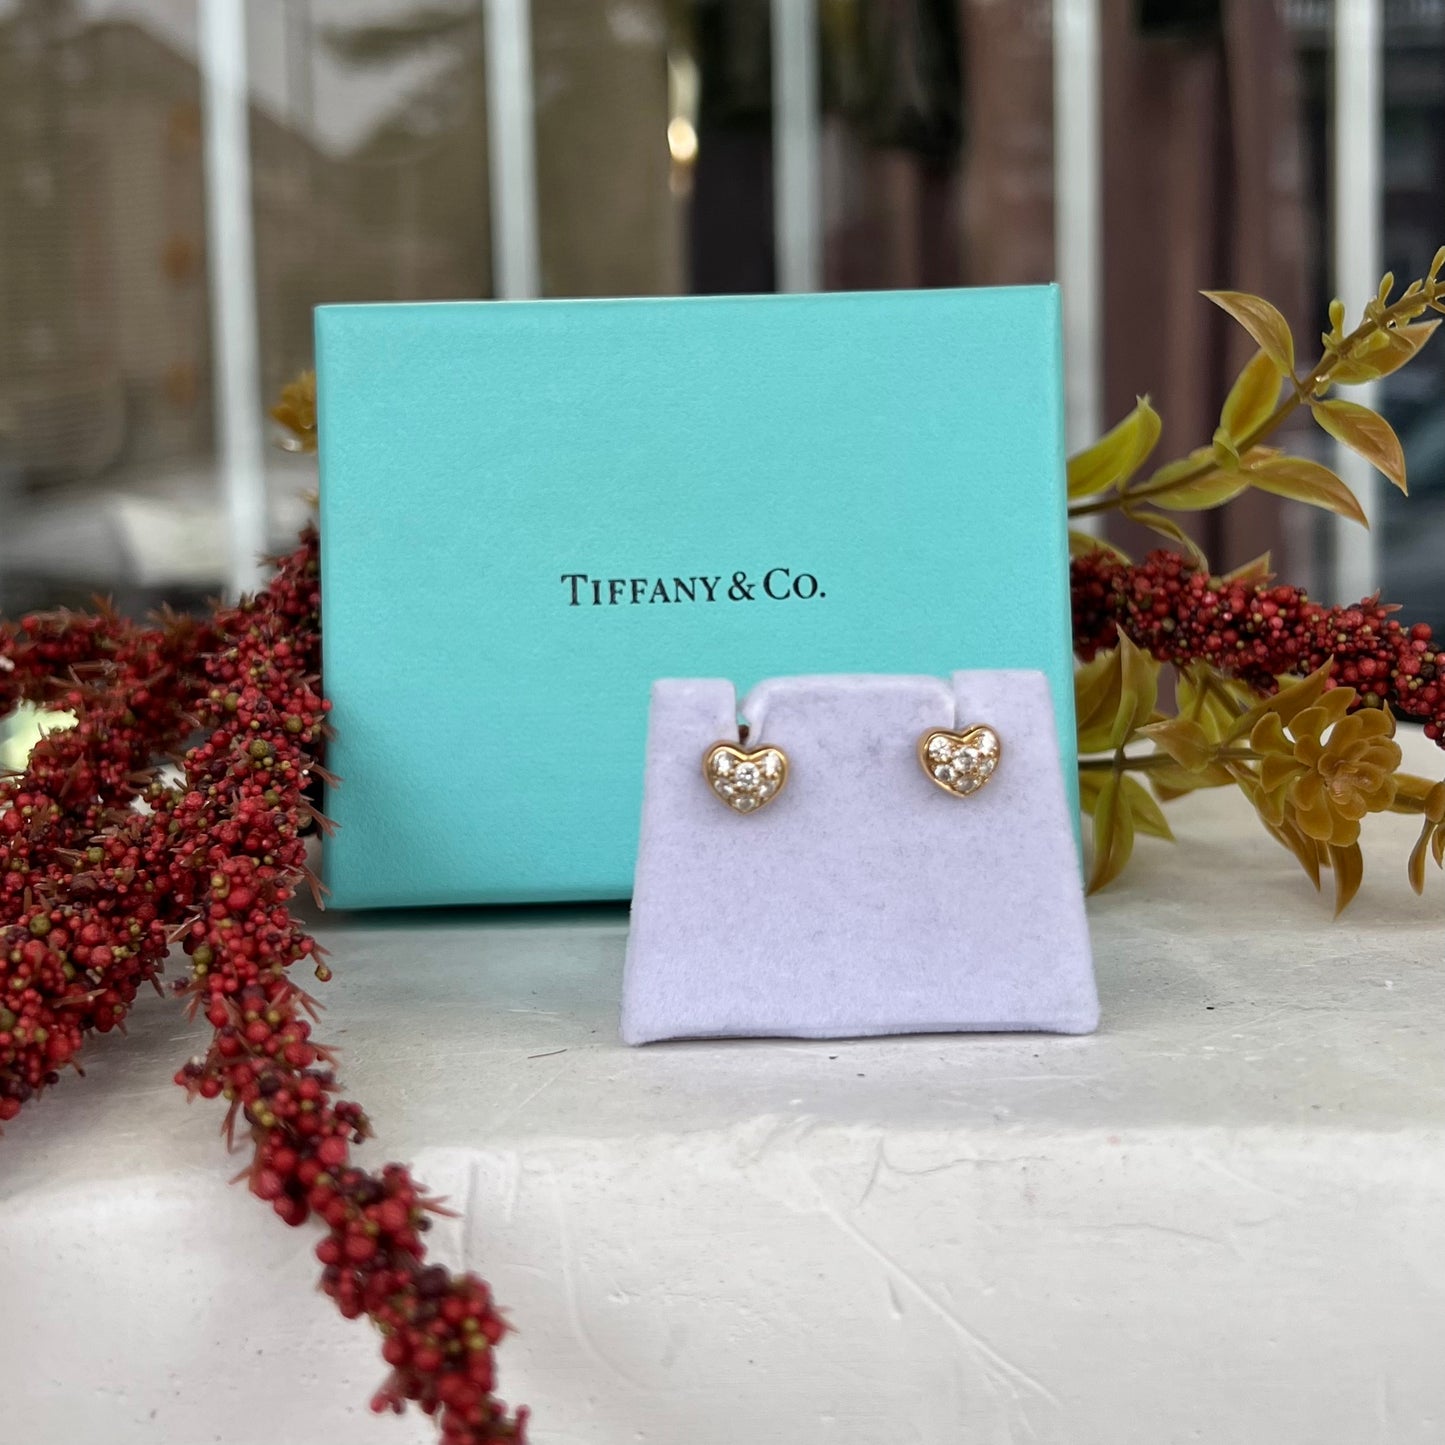 Tiffany & Co 18k Gold Diamond Heart Earrings